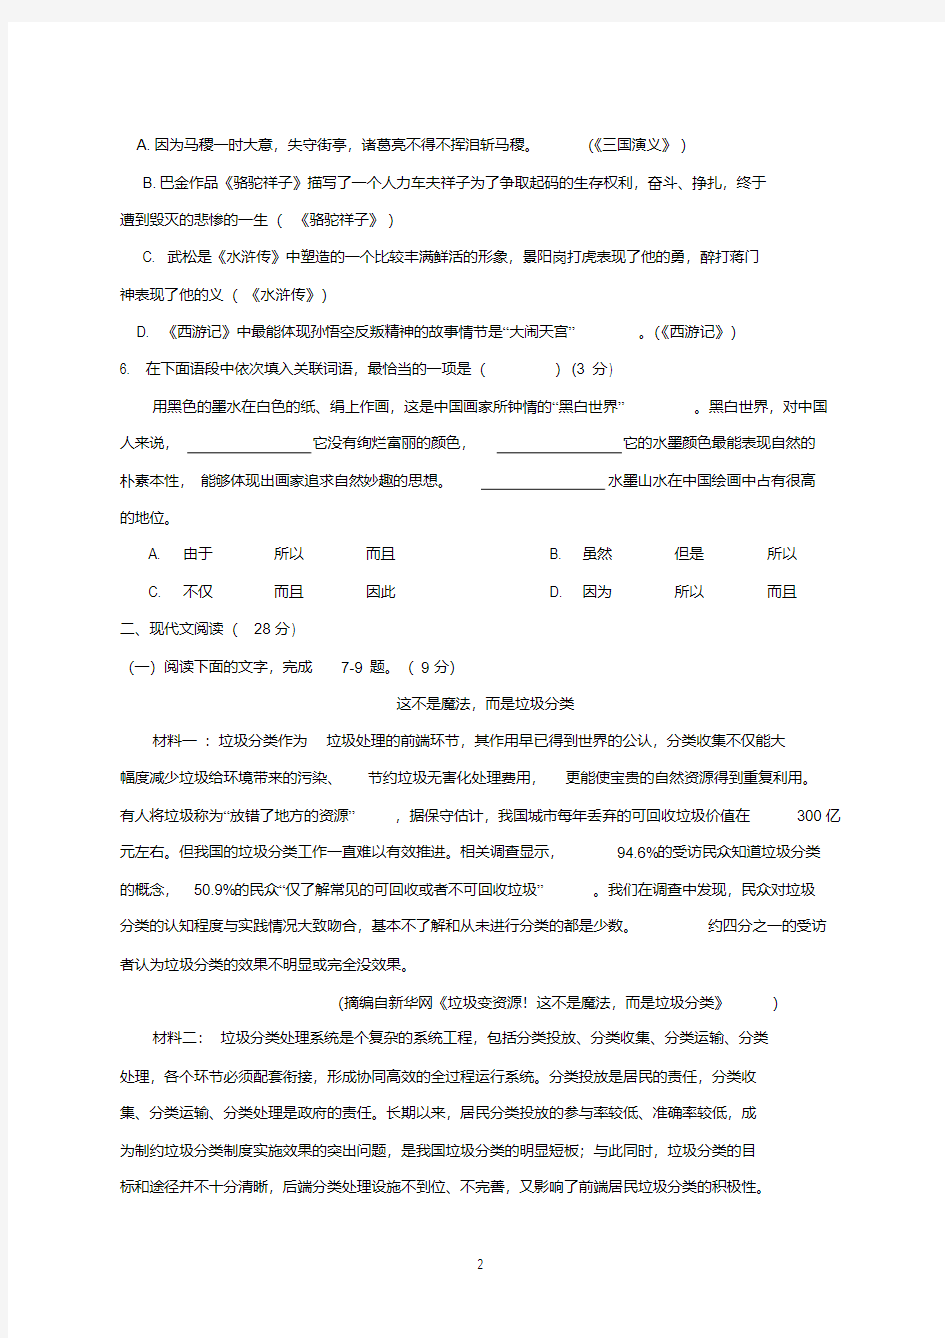 2020年中考语文模拟试题三(附答案).pdf